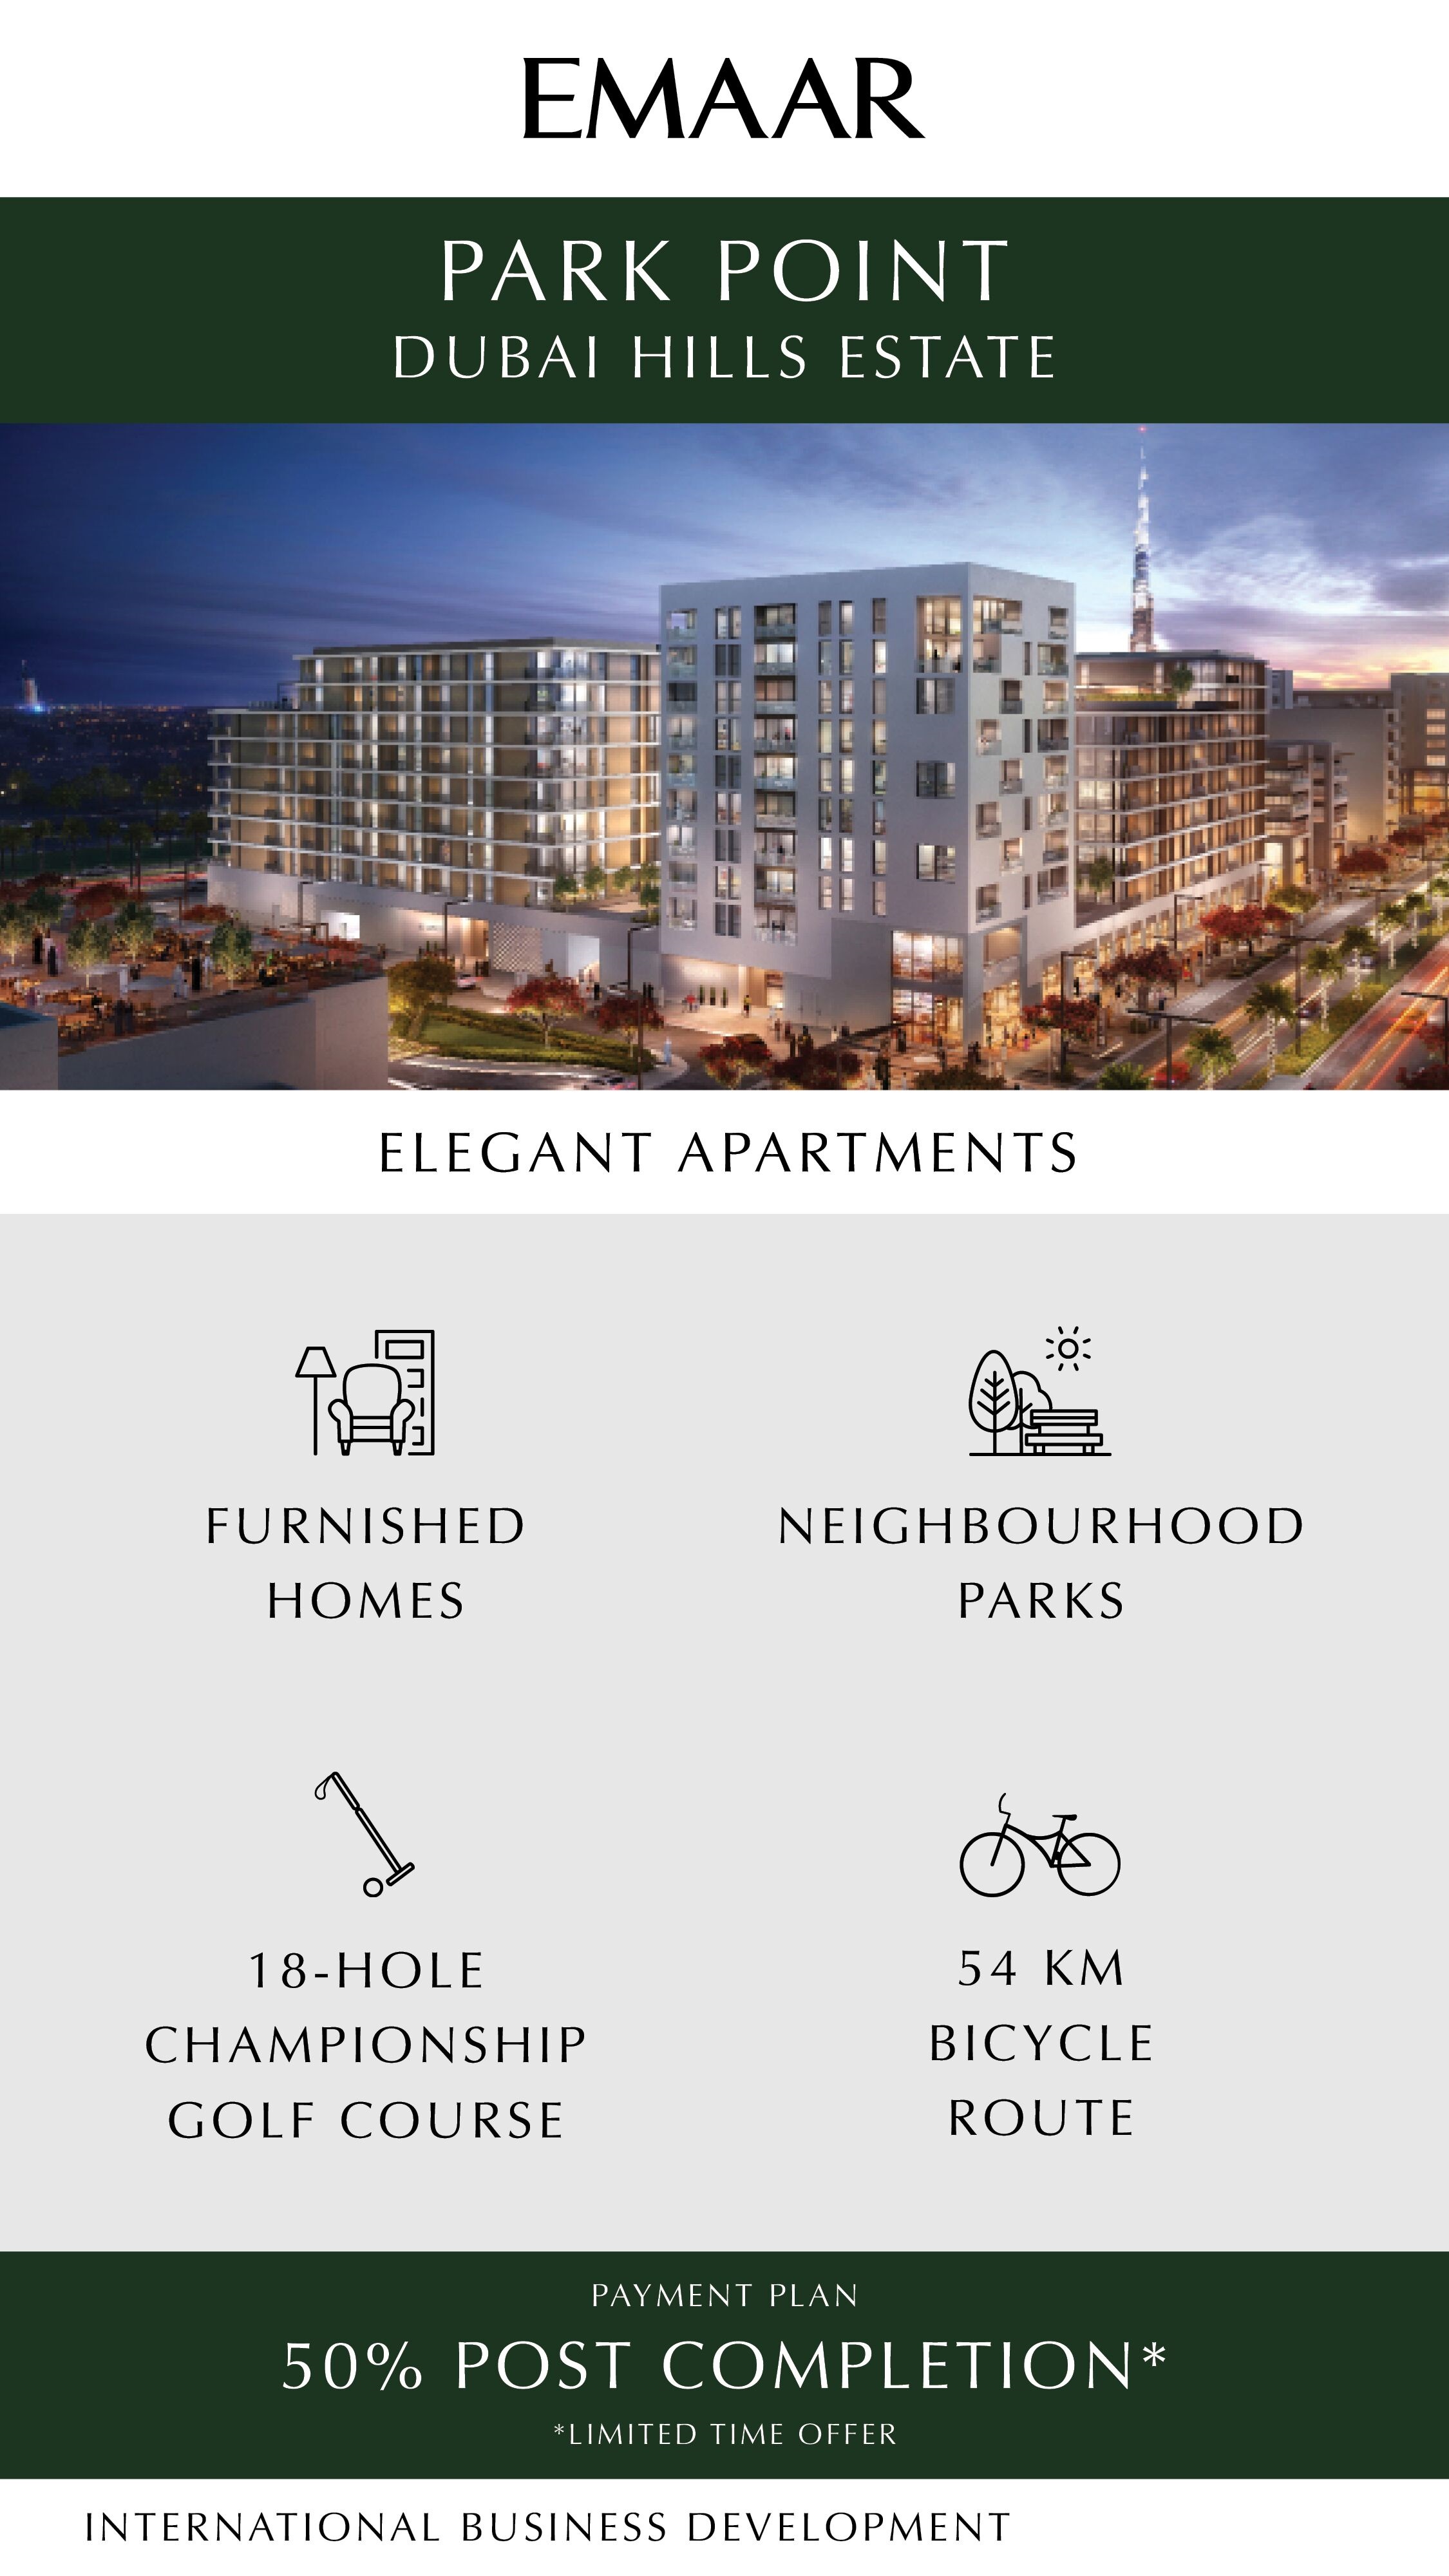 Buy Elegant Apartments at Emaar Park Point Dubai Hills Estate, UAE